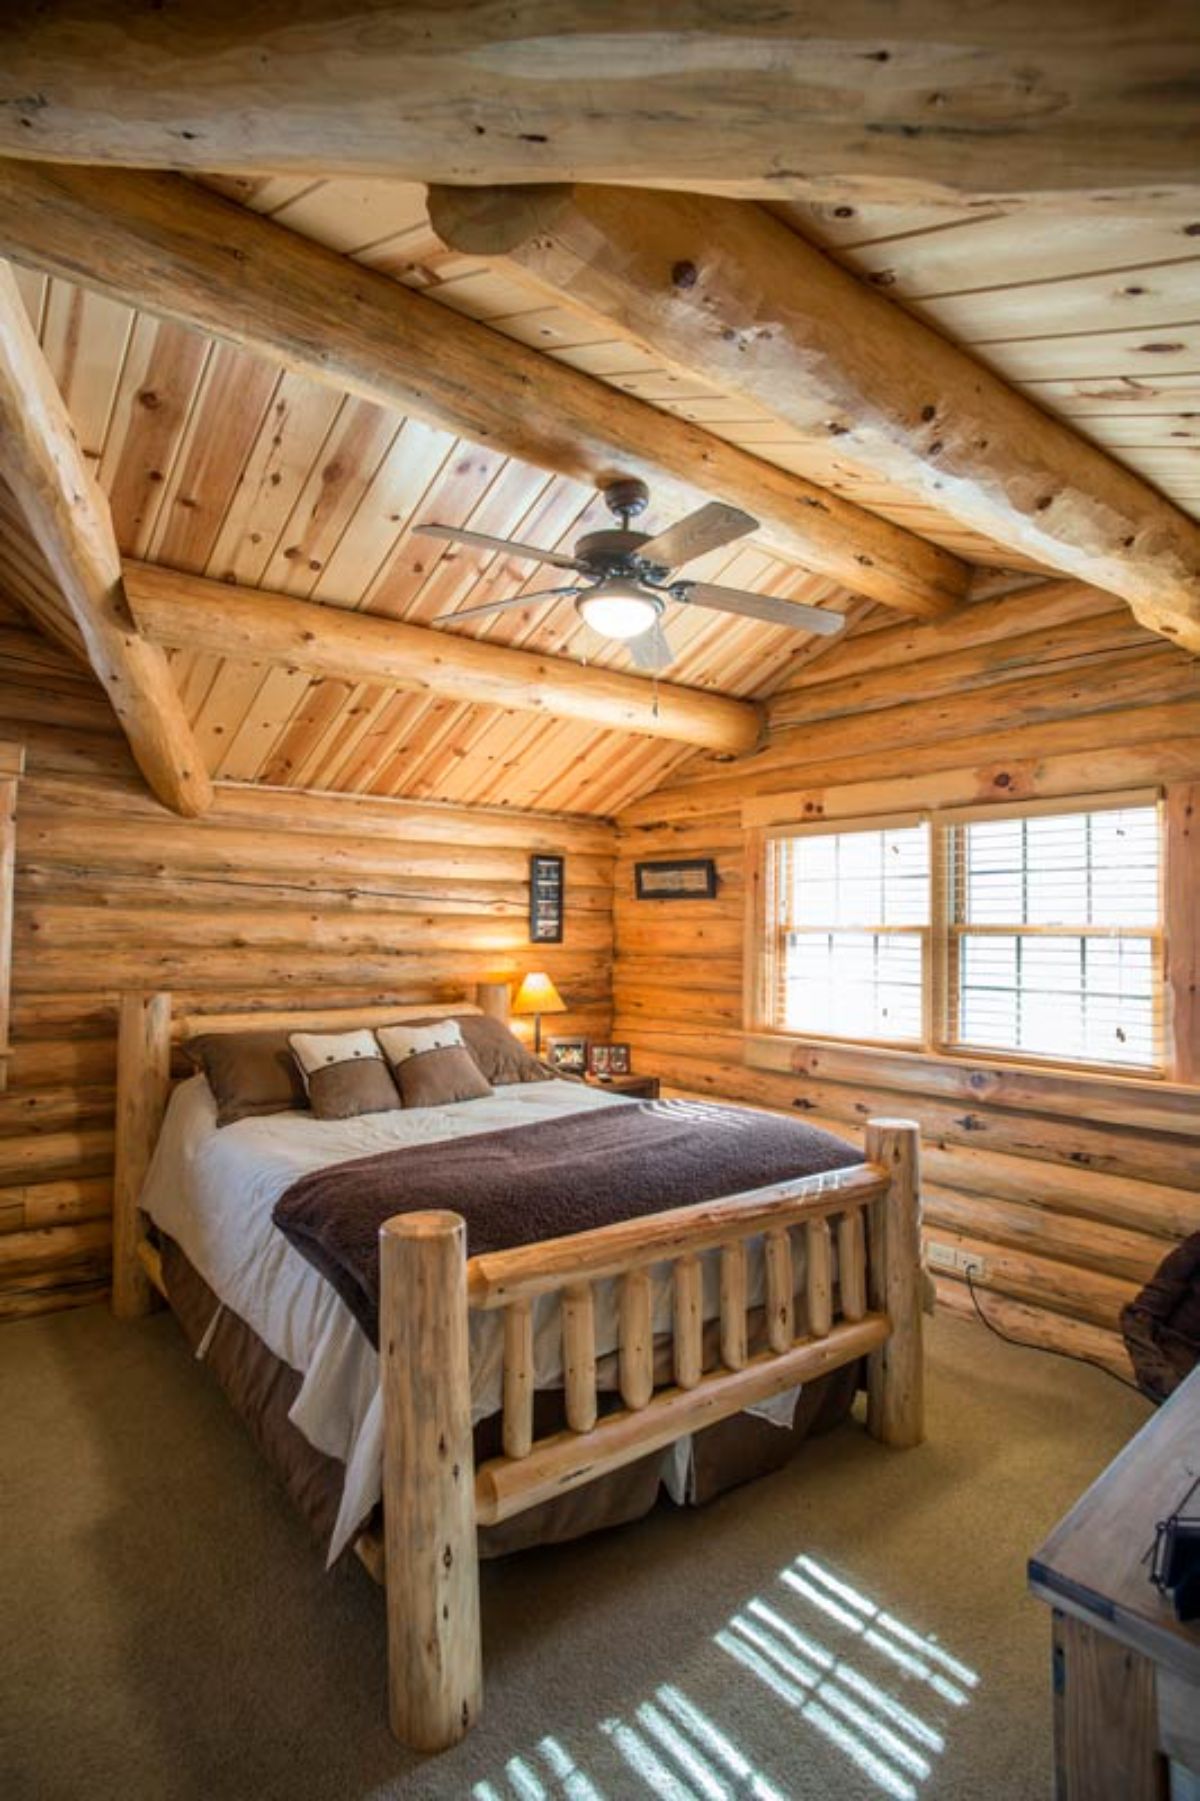 wood bed frame on bed under eaves of loft floor in log cabin